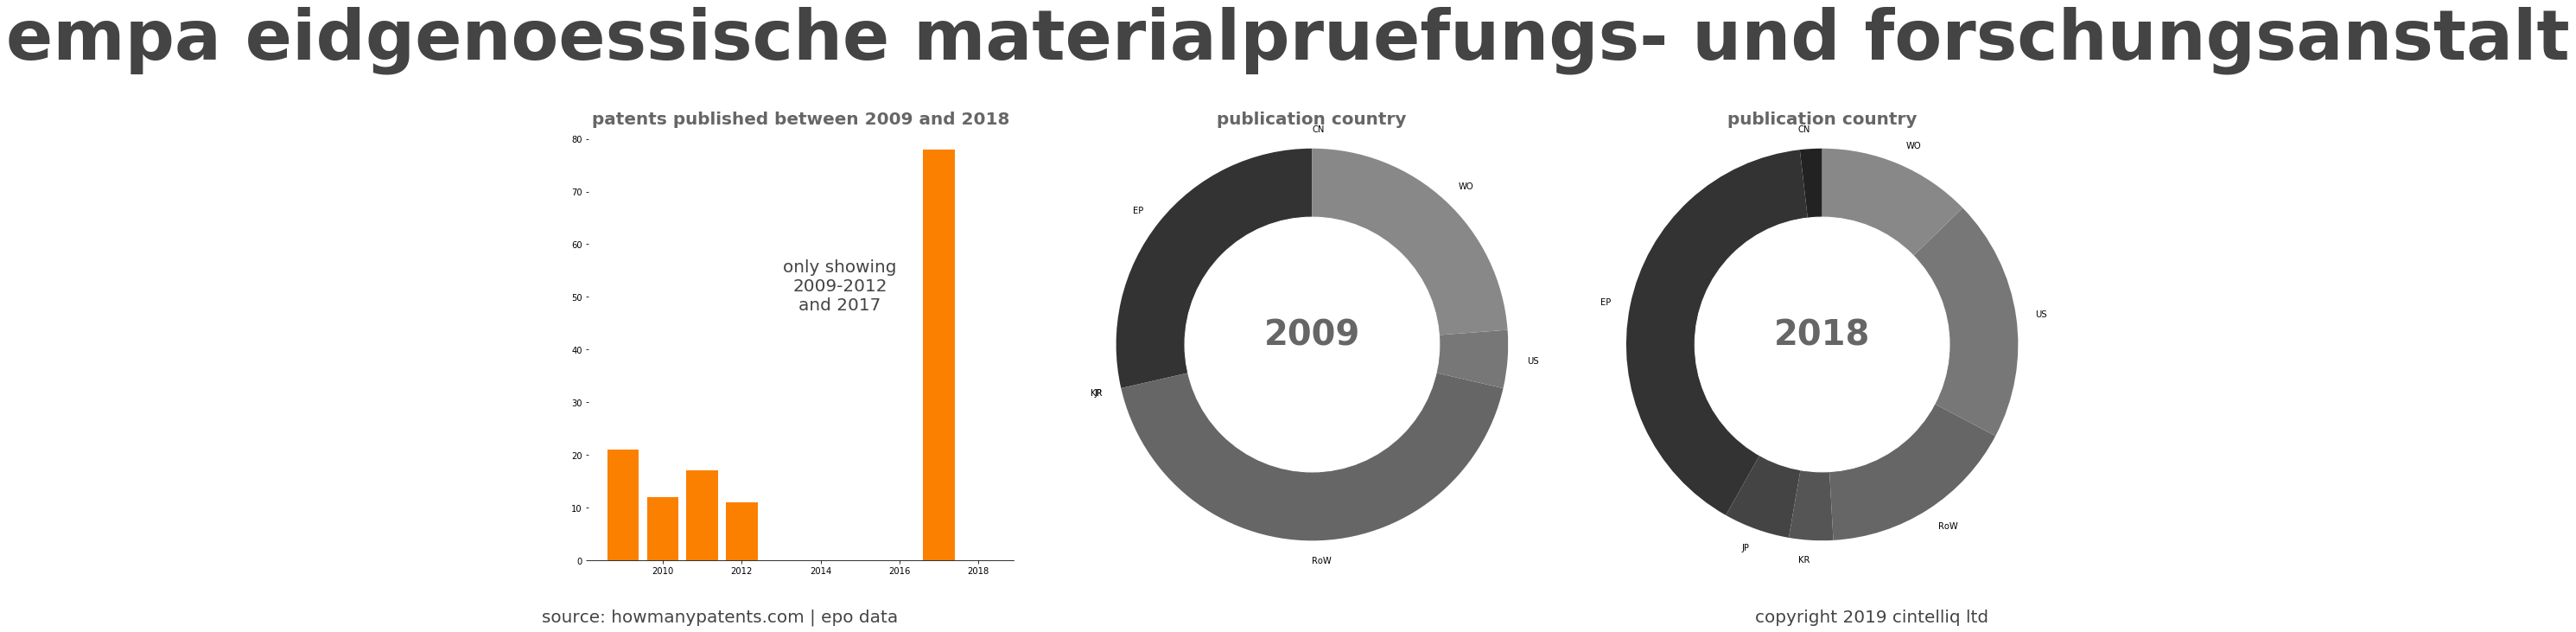 summary of patents for Empa Eidgenoessische Materialpruefungs- Und Forschungsanstalt